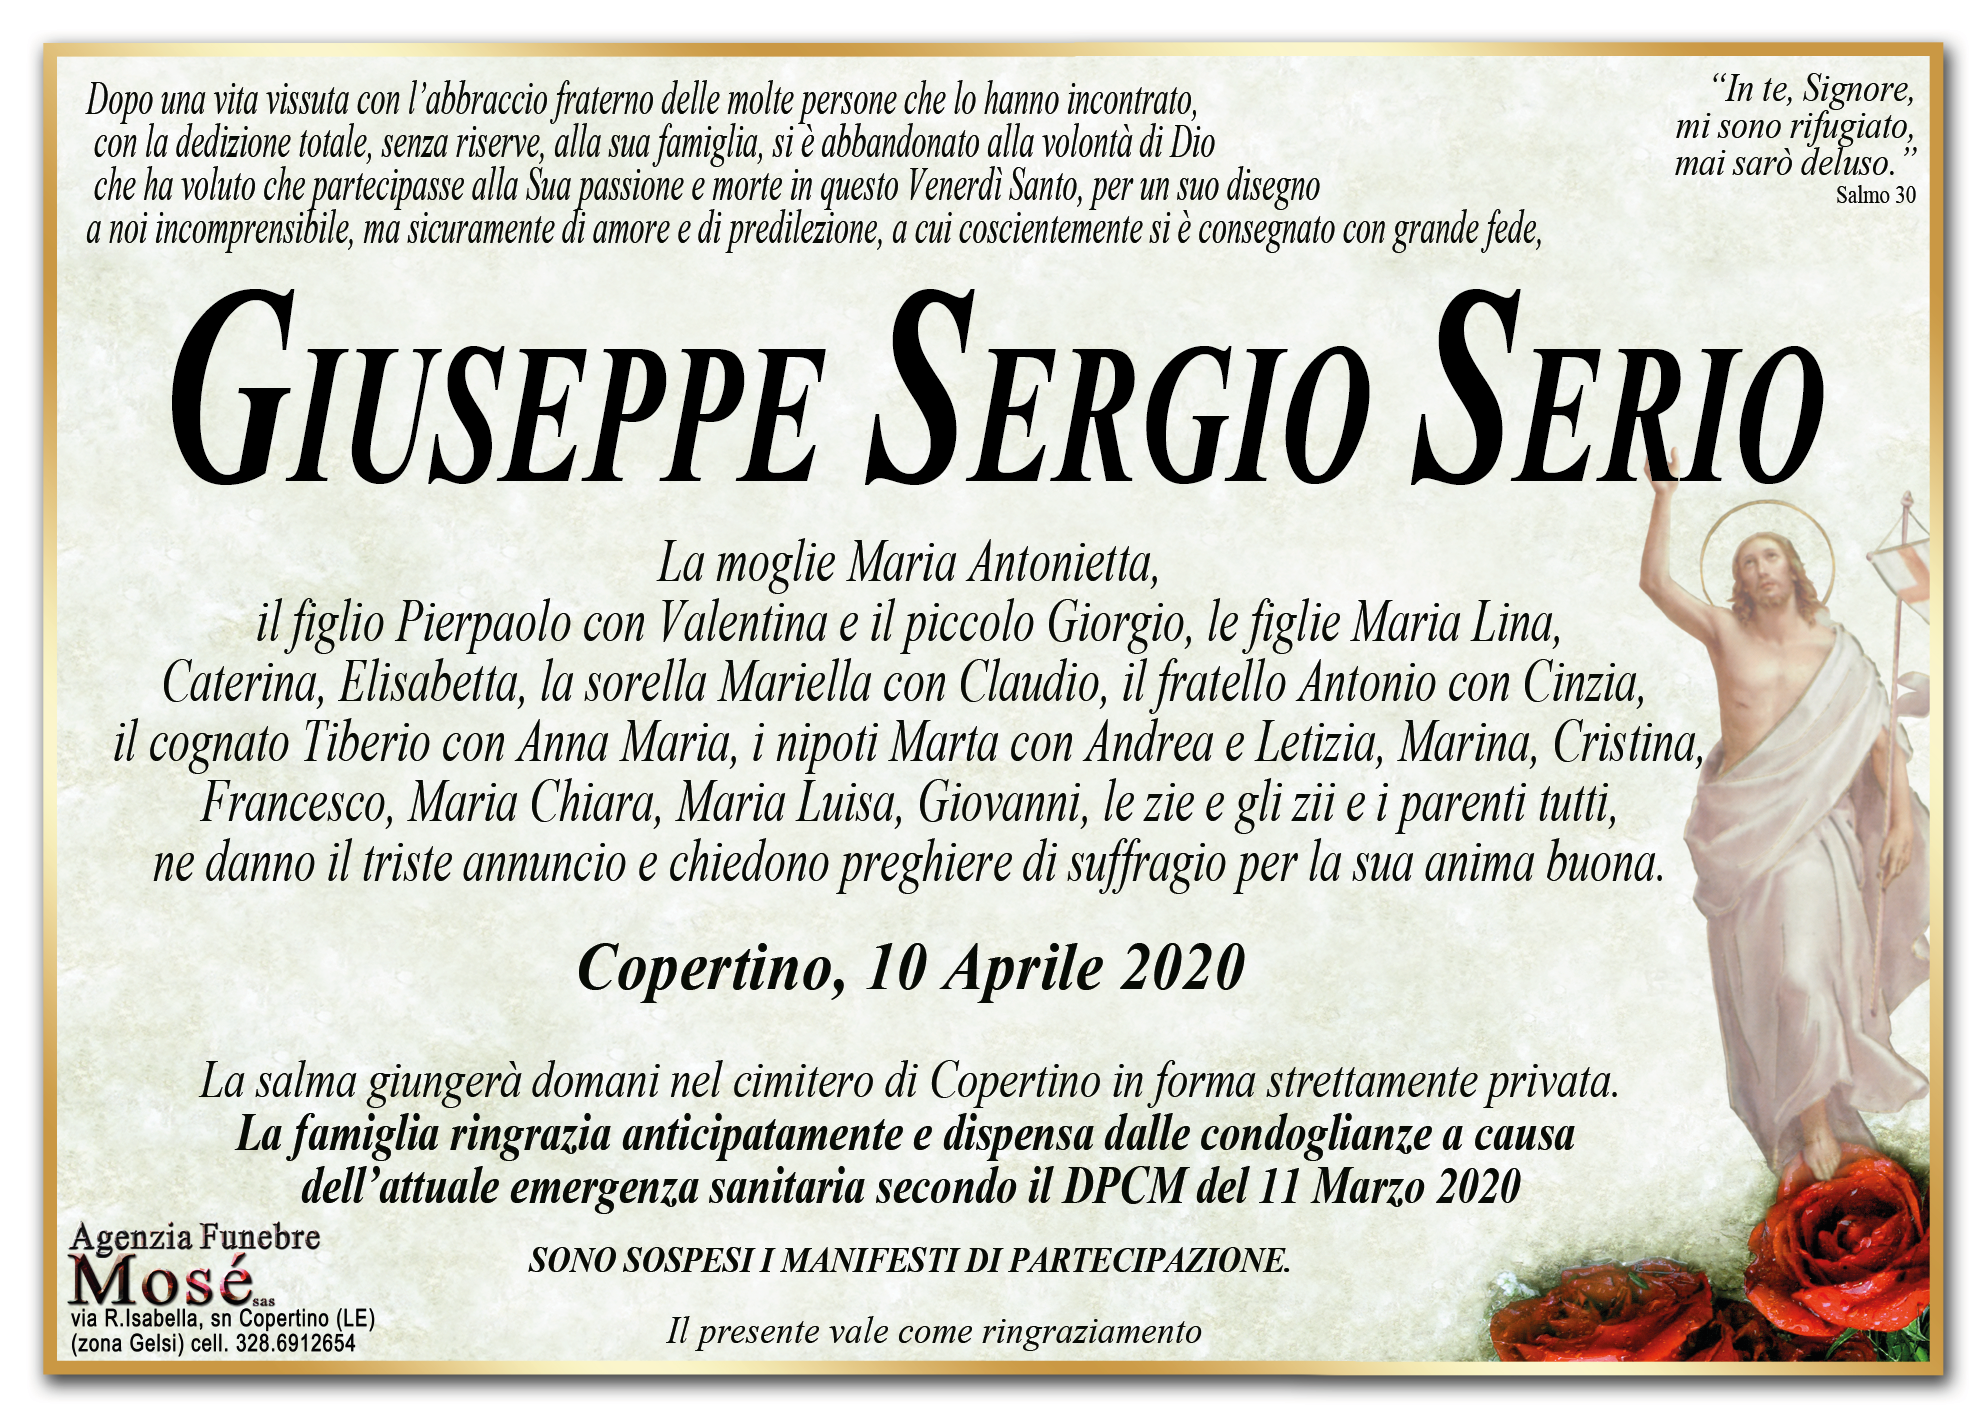 Giuseppe Sergio Serio